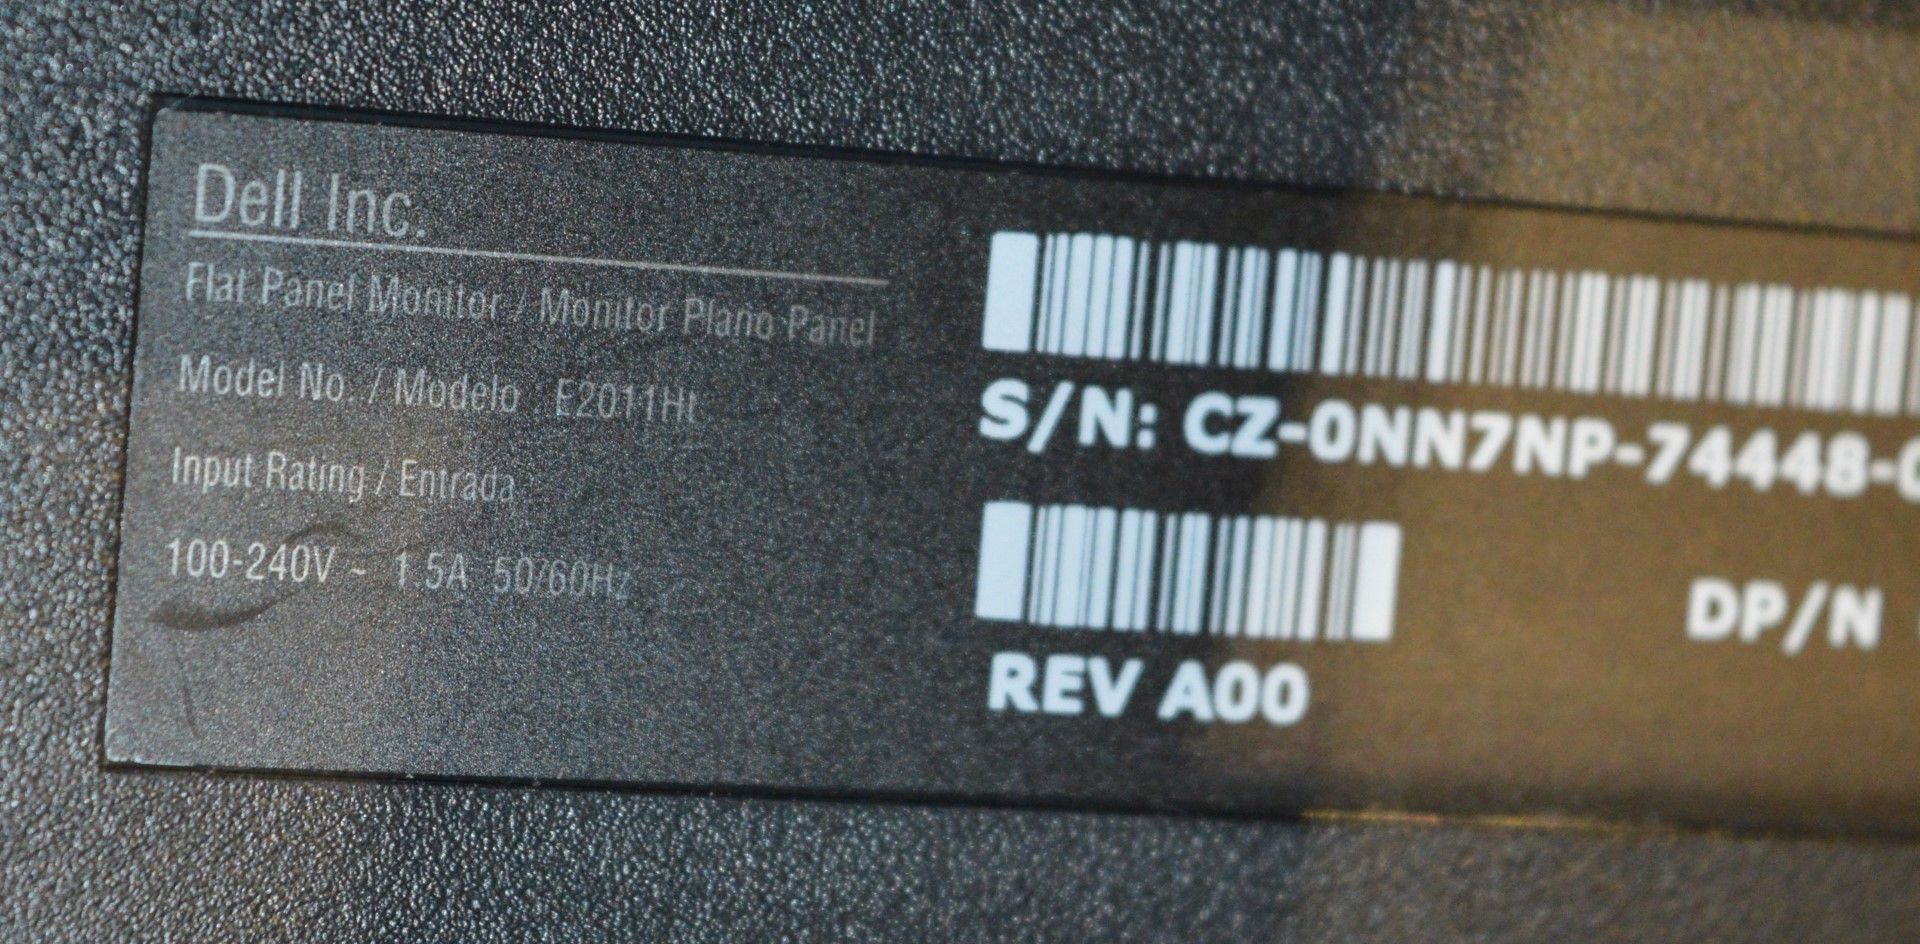 1 x Dell Flat Screen 20 Inch Monitor - Model E2011HI - Ref J1236 - CL011 - Location: Altrincham - Image 2 of 2